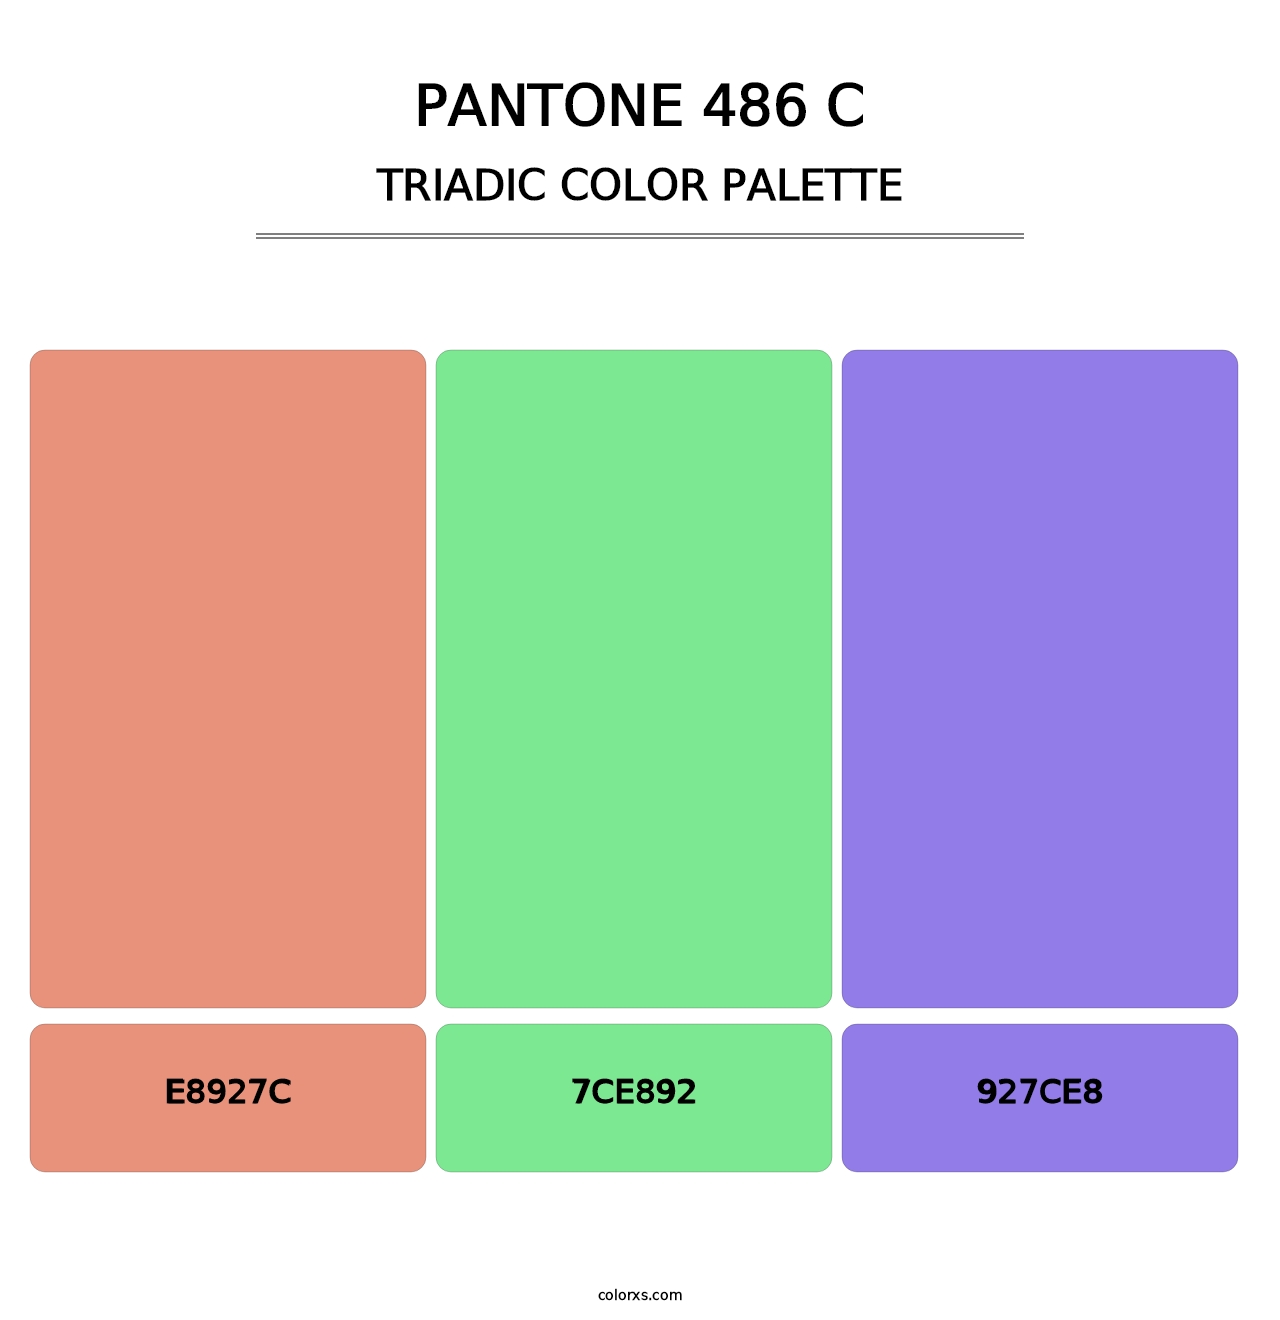 PANTONE 486 C - Triadic Color Palette